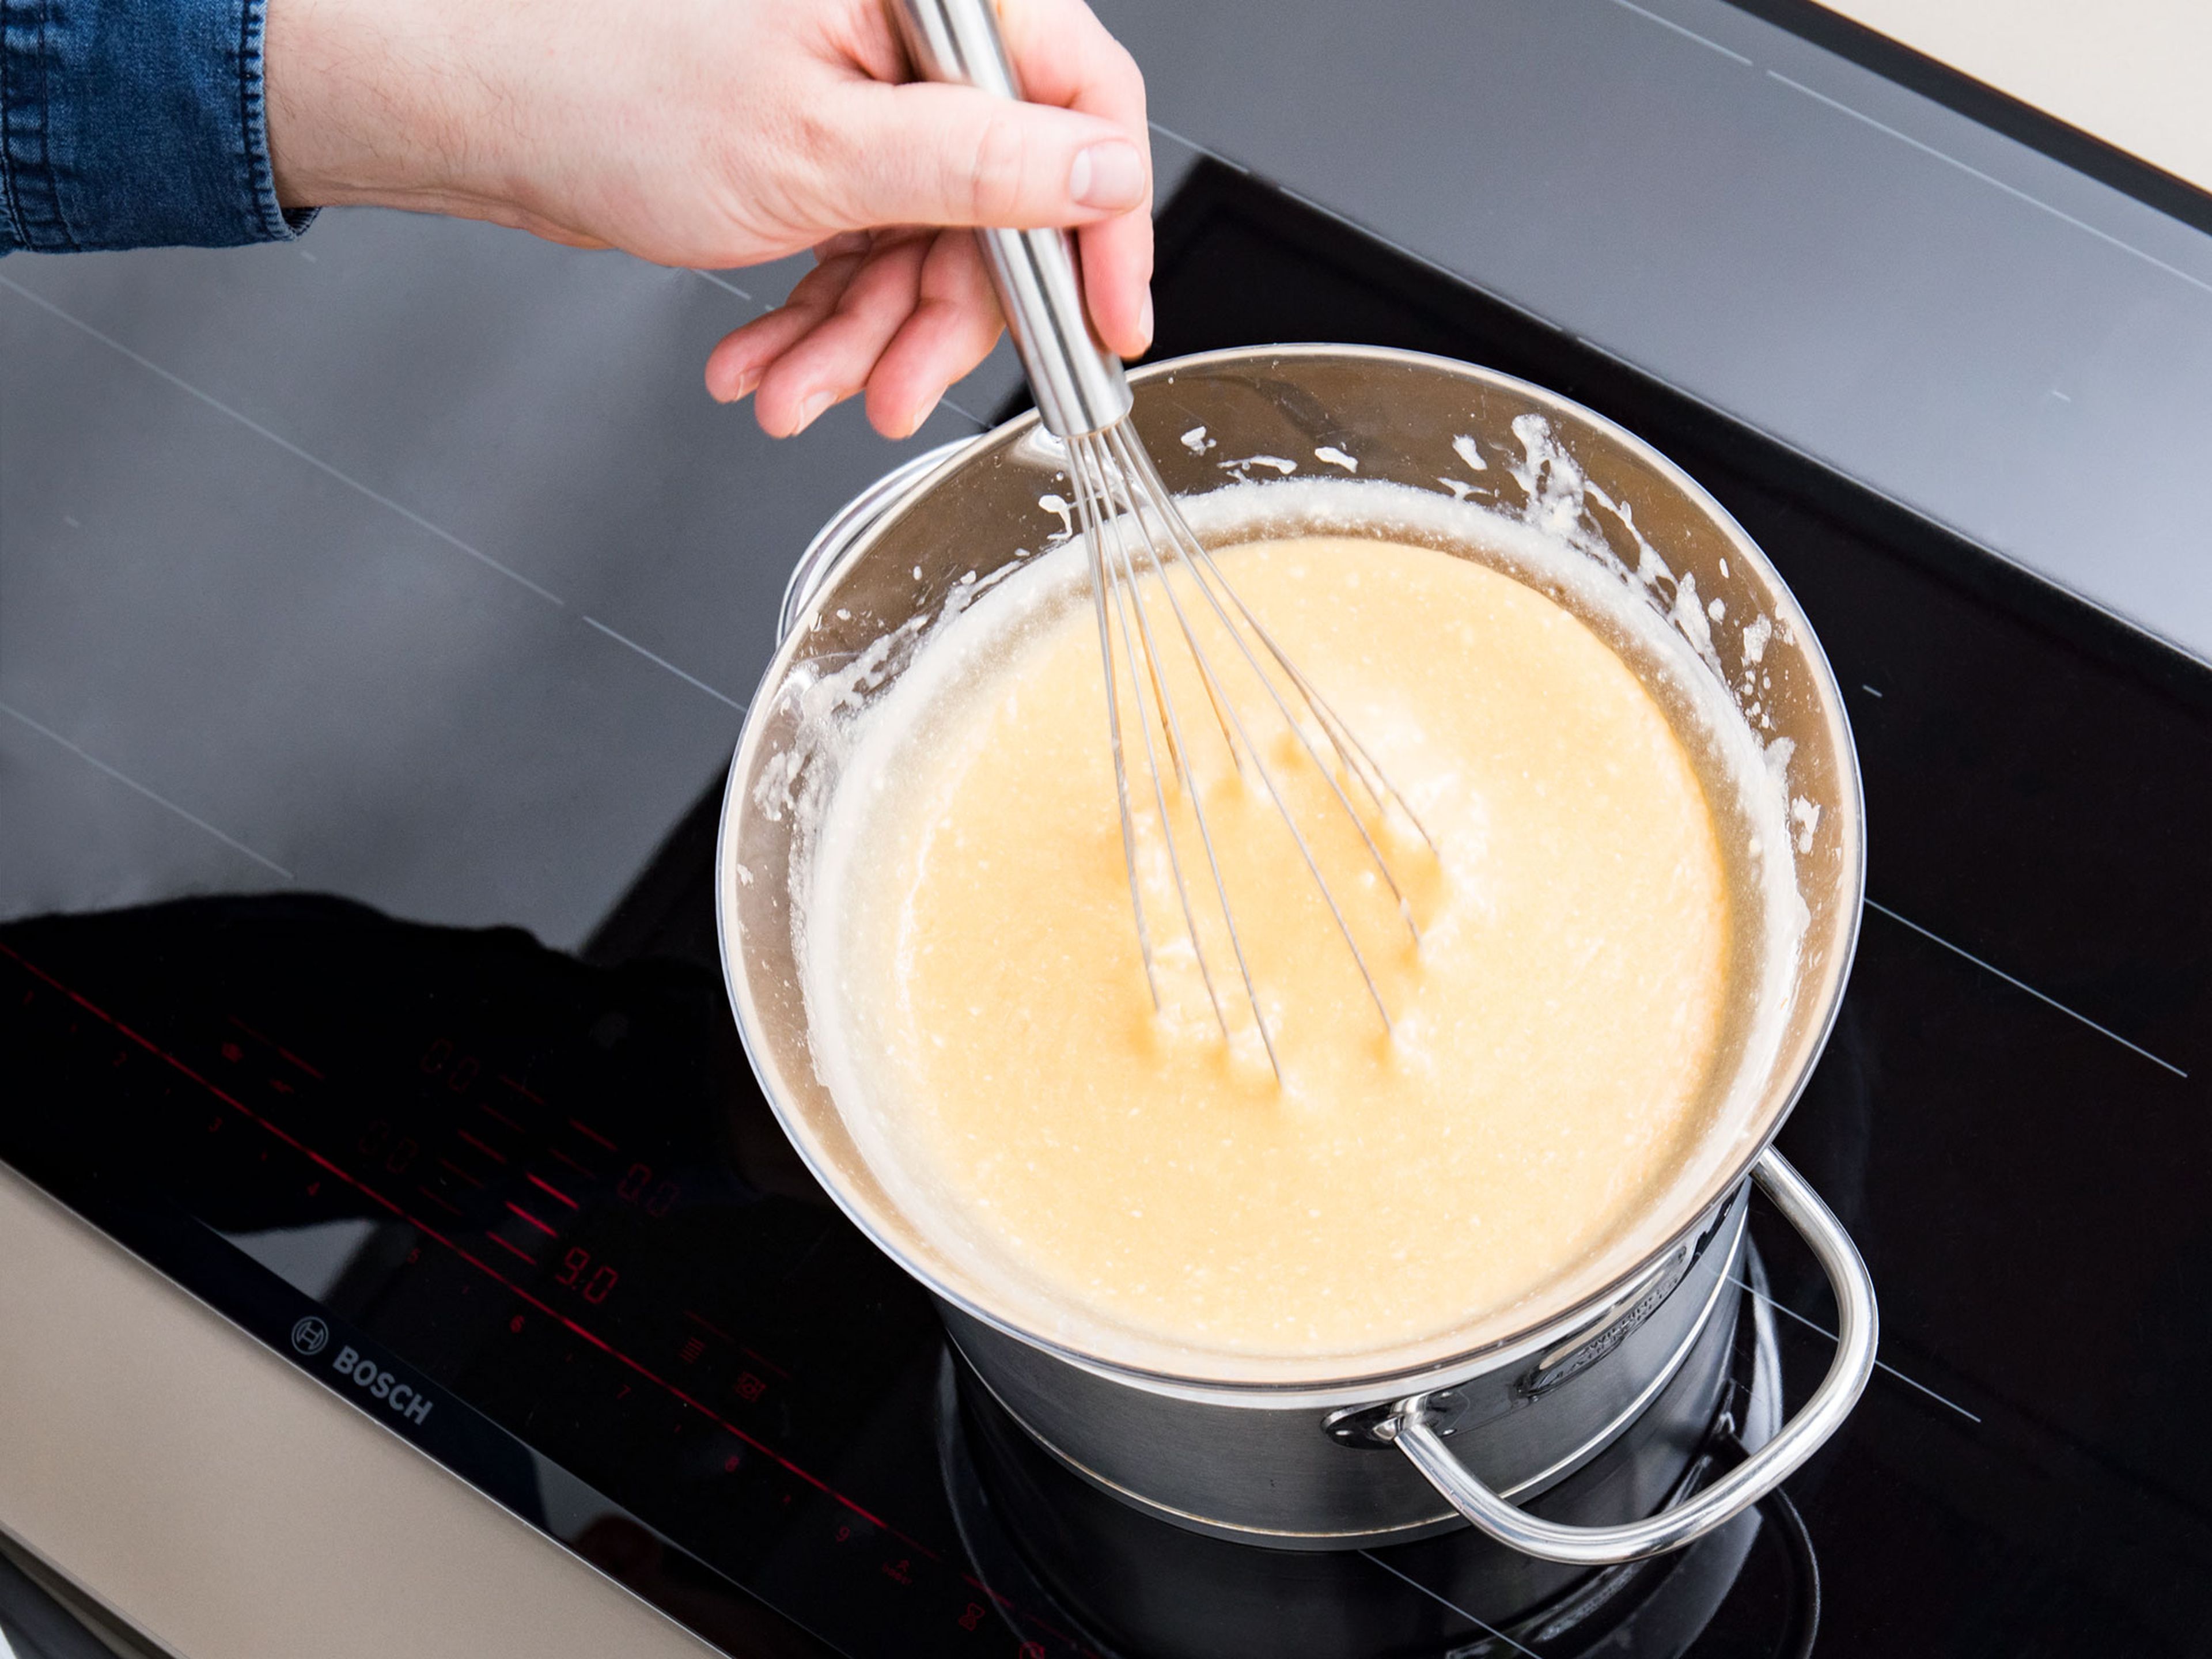 Pomelo-Mischung in eine Schüssel geben und auf einen Topf mit köchelndem Wasser setzen. Zucker, Butter und Eier hinzufügen und ca. 15 Min. konstant rühren, oder bis die Masse andickt. Zum Abkühlen beiseitestellen.